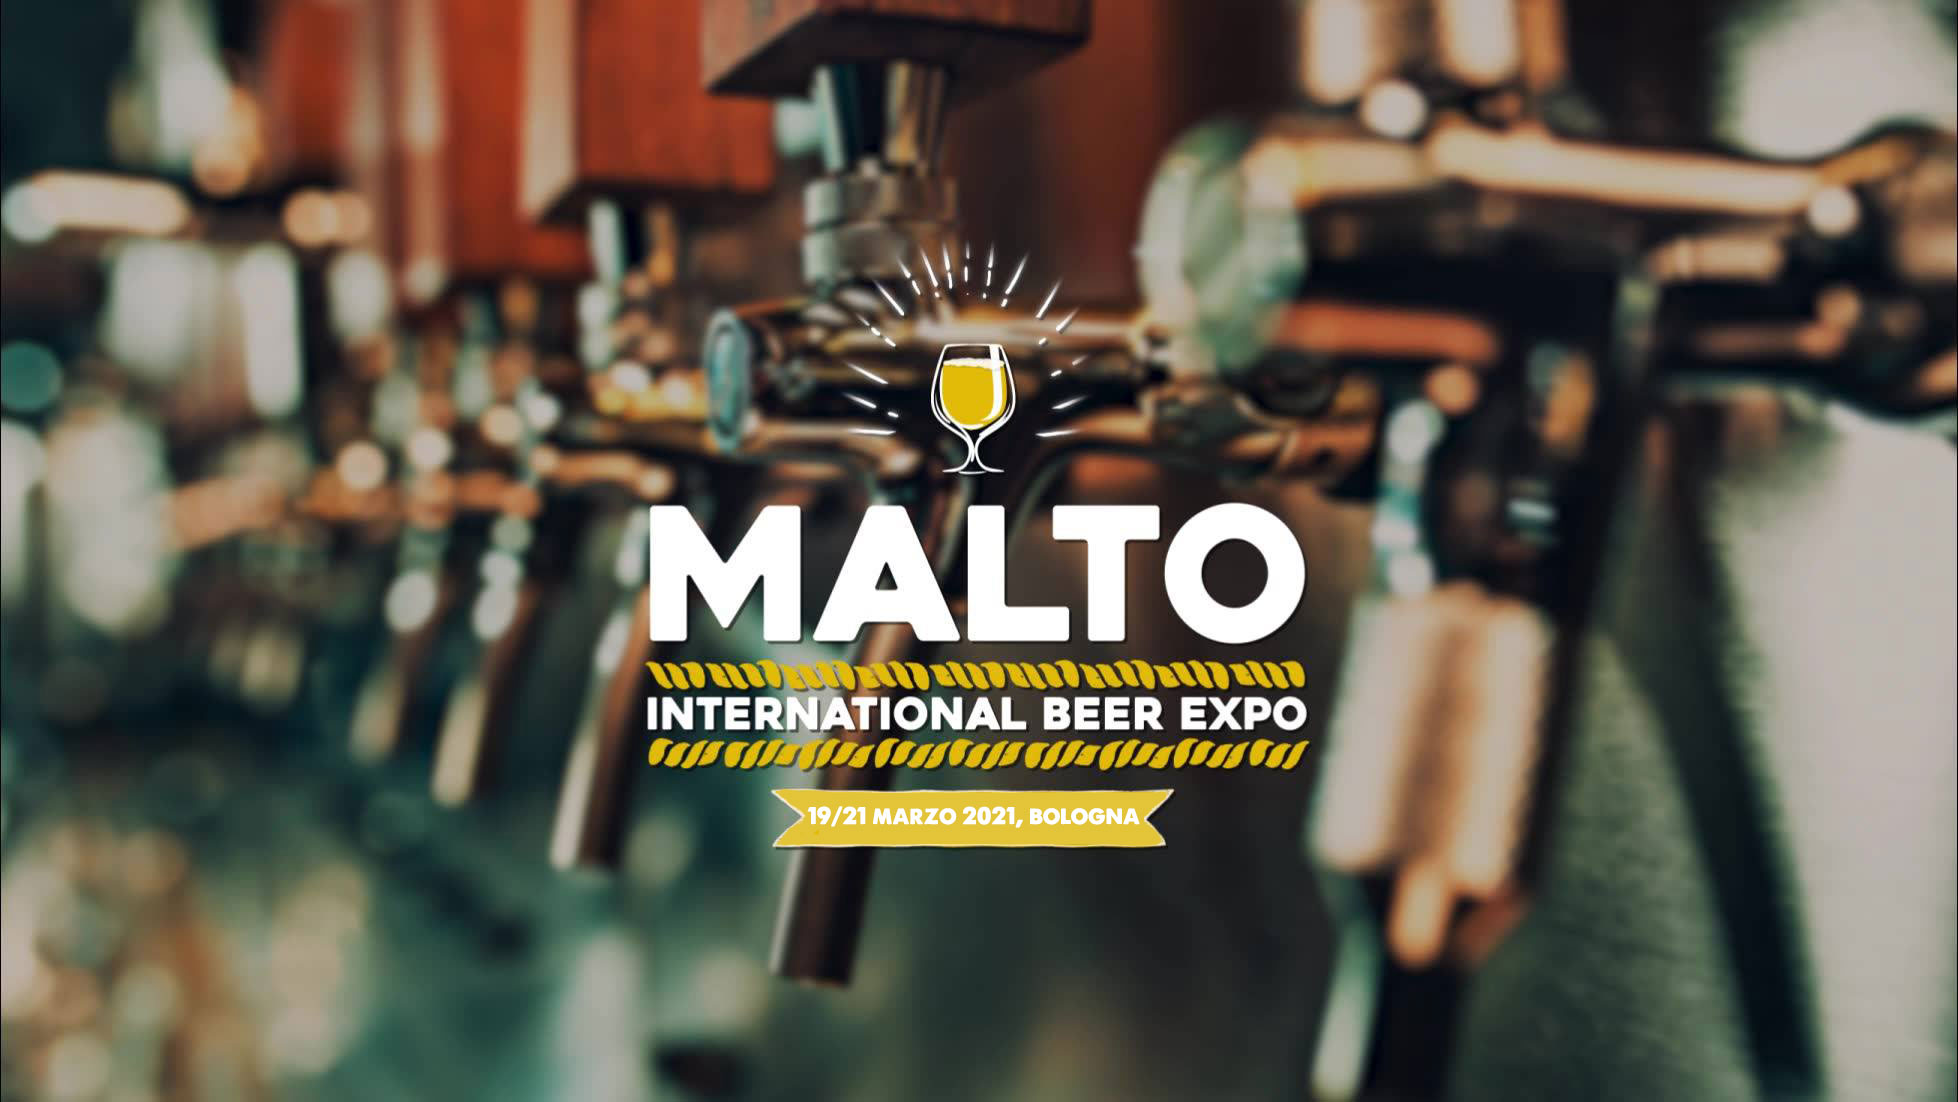 malto beer expo 2021 bologna